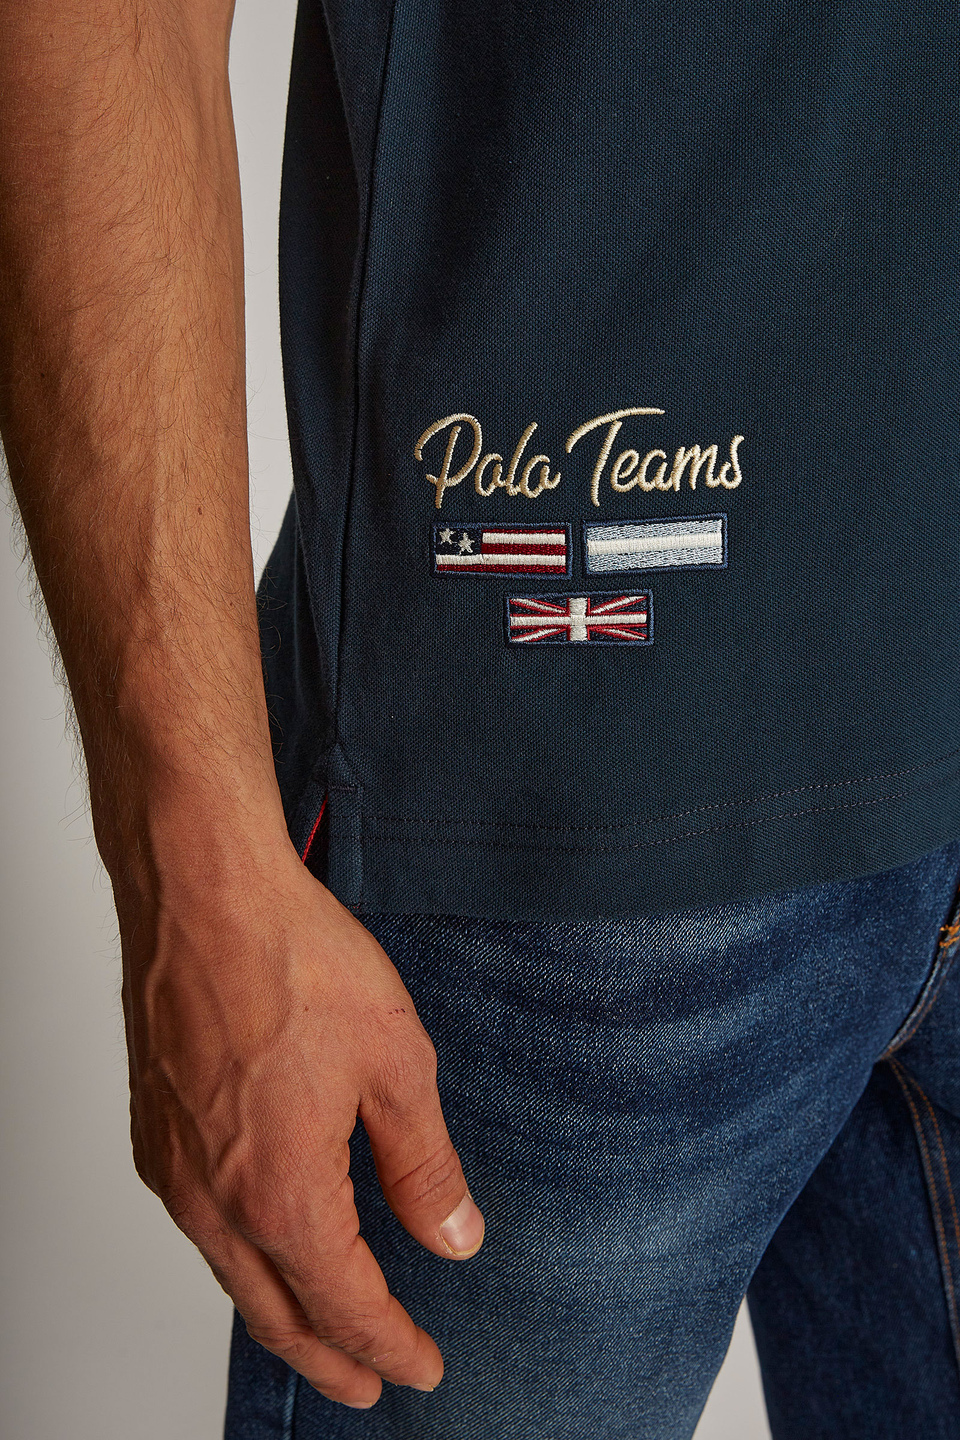 Polo homme de couleur unie, à manches courtes et coupe classique - La Martina - Official Online Shop